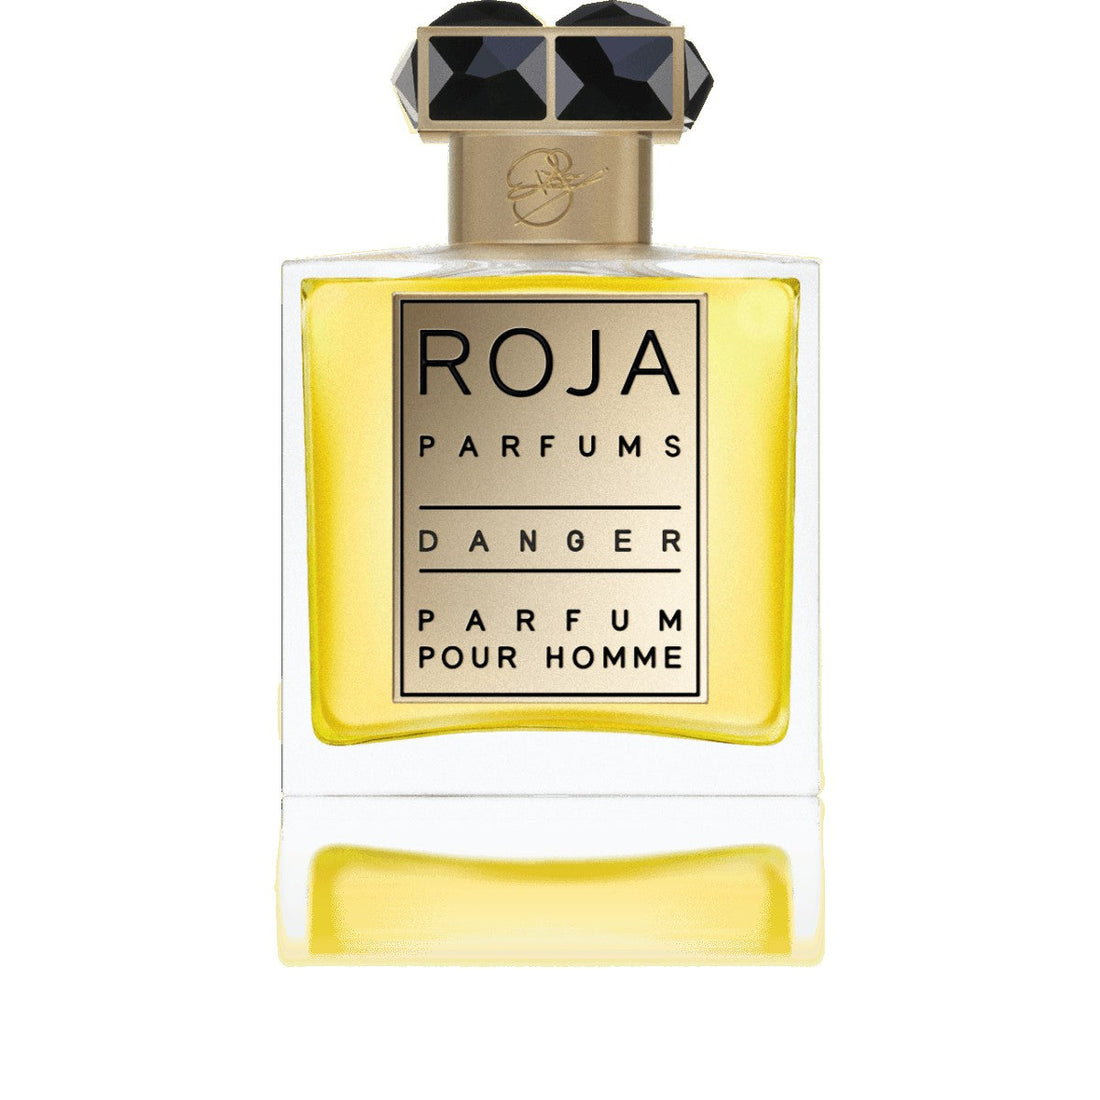 Roja Danger Parfum - 50 ml